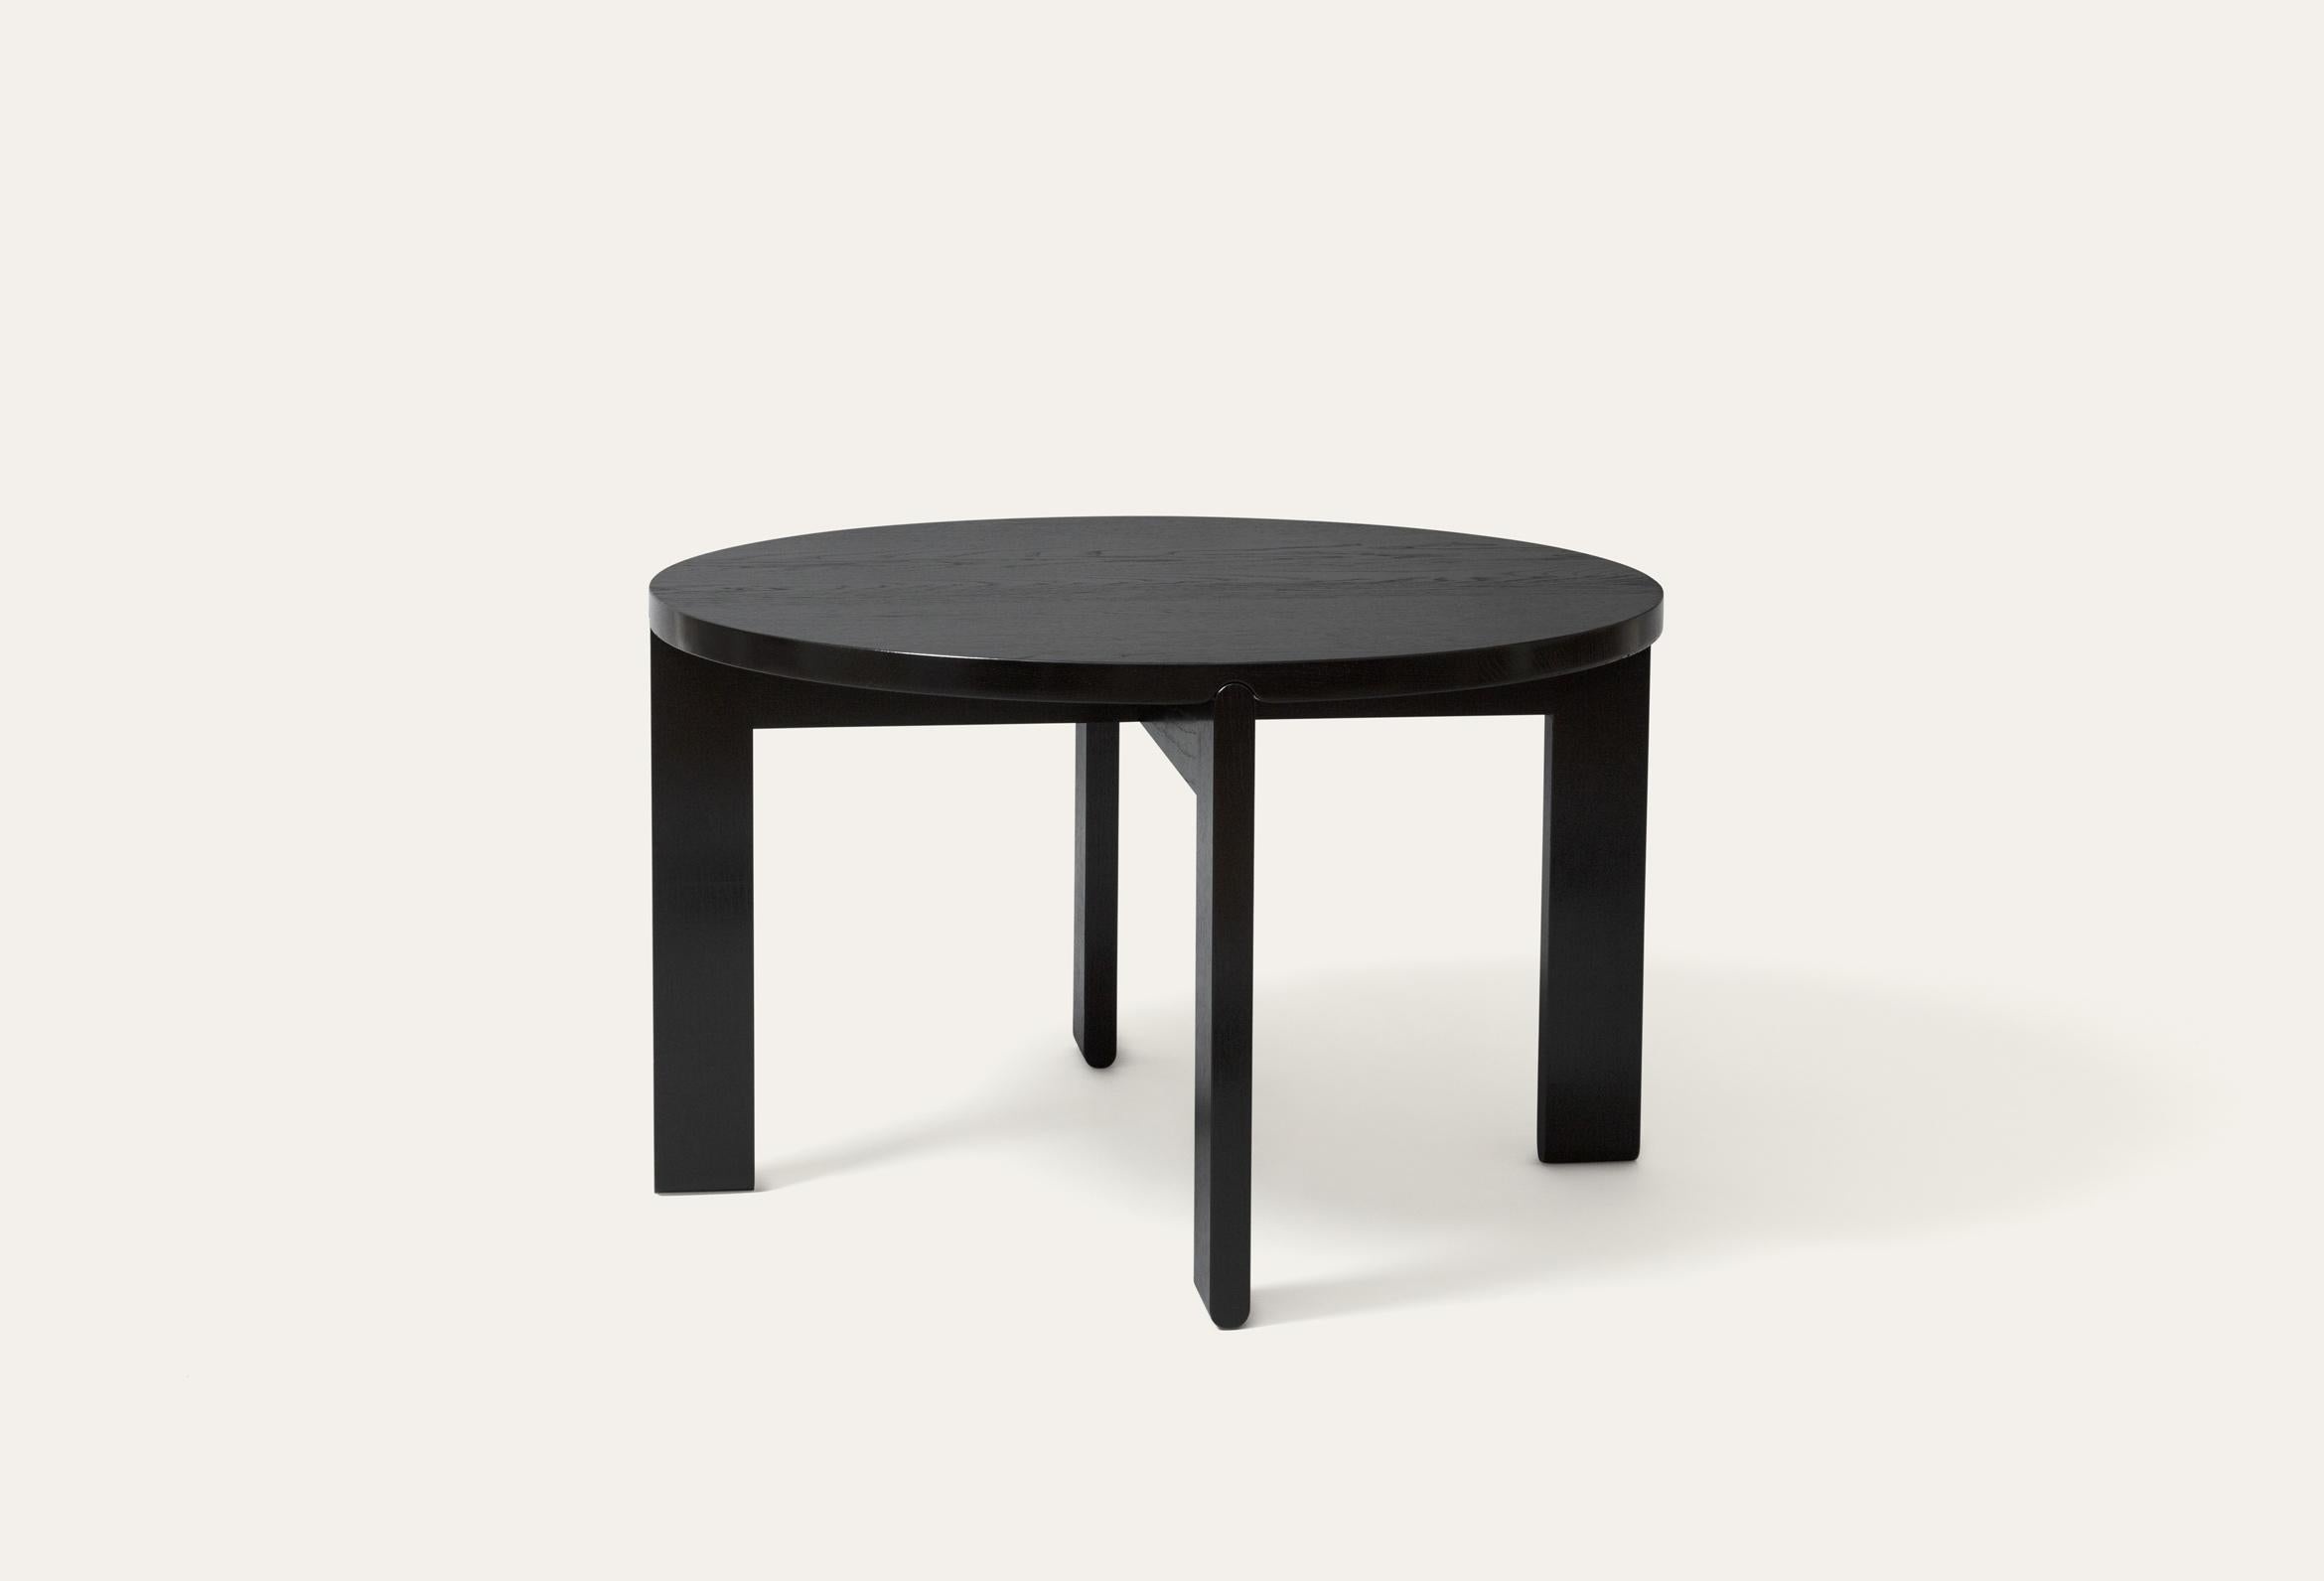 Table basse Rond par Storängen Design
Dimensions : D 75 x H 45 cm
MATERIAL : bois de bouleau.
Disponible en d'autres couleurs et en 2 tailles : D100cm, D75cm.

Rond est une table basse en chêne massif. Les différents diamètres et hauteurs